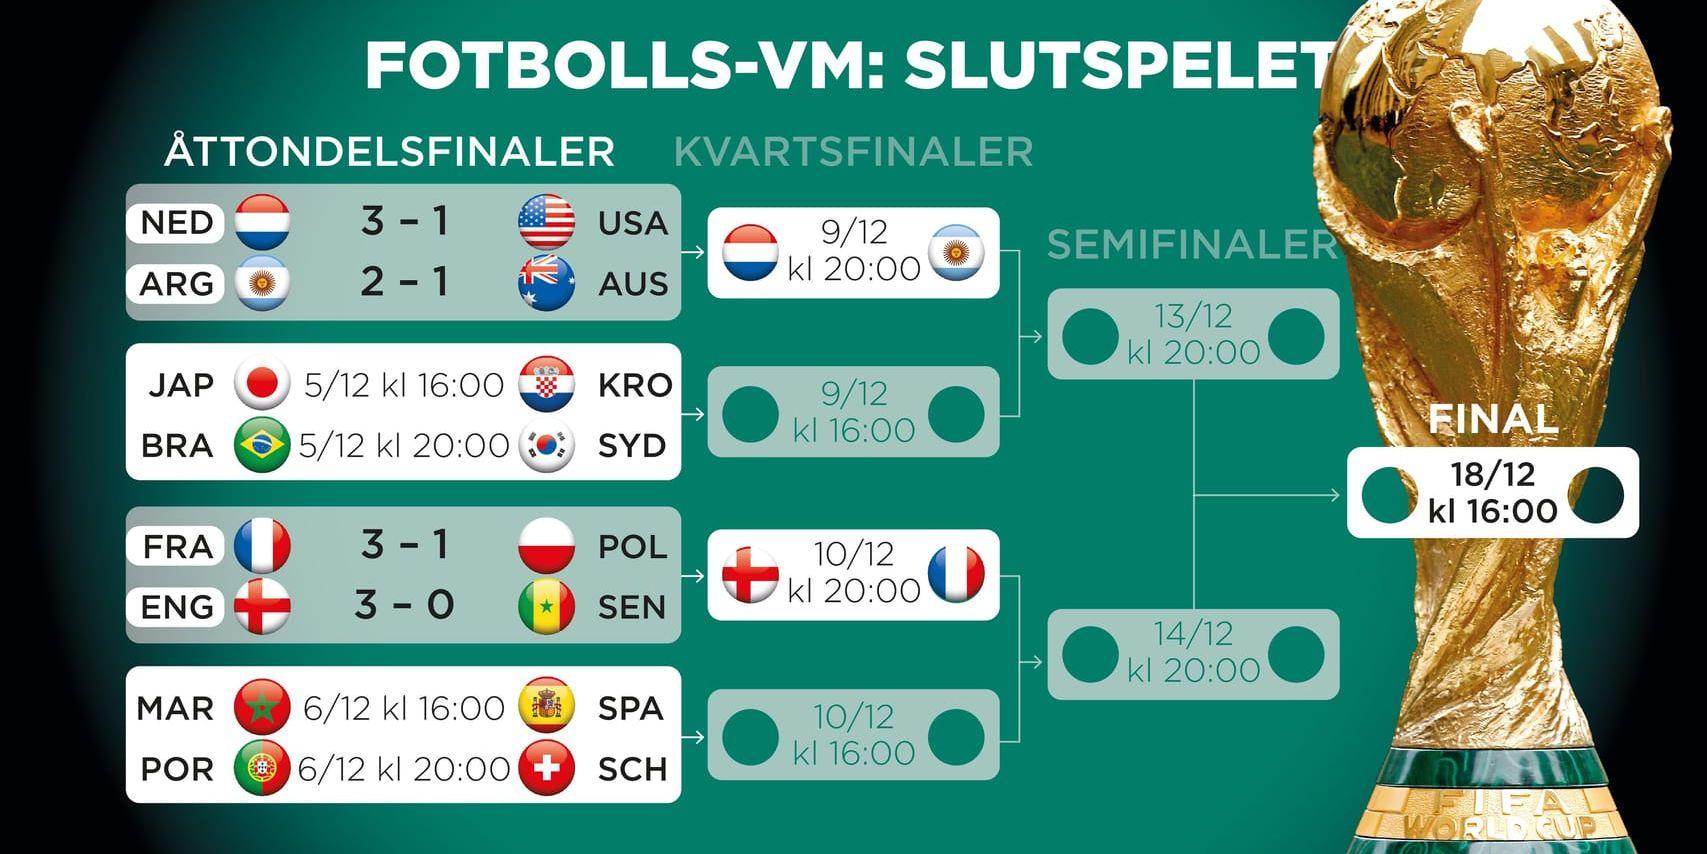 Slutspelsträdet i fotbolls-VM.